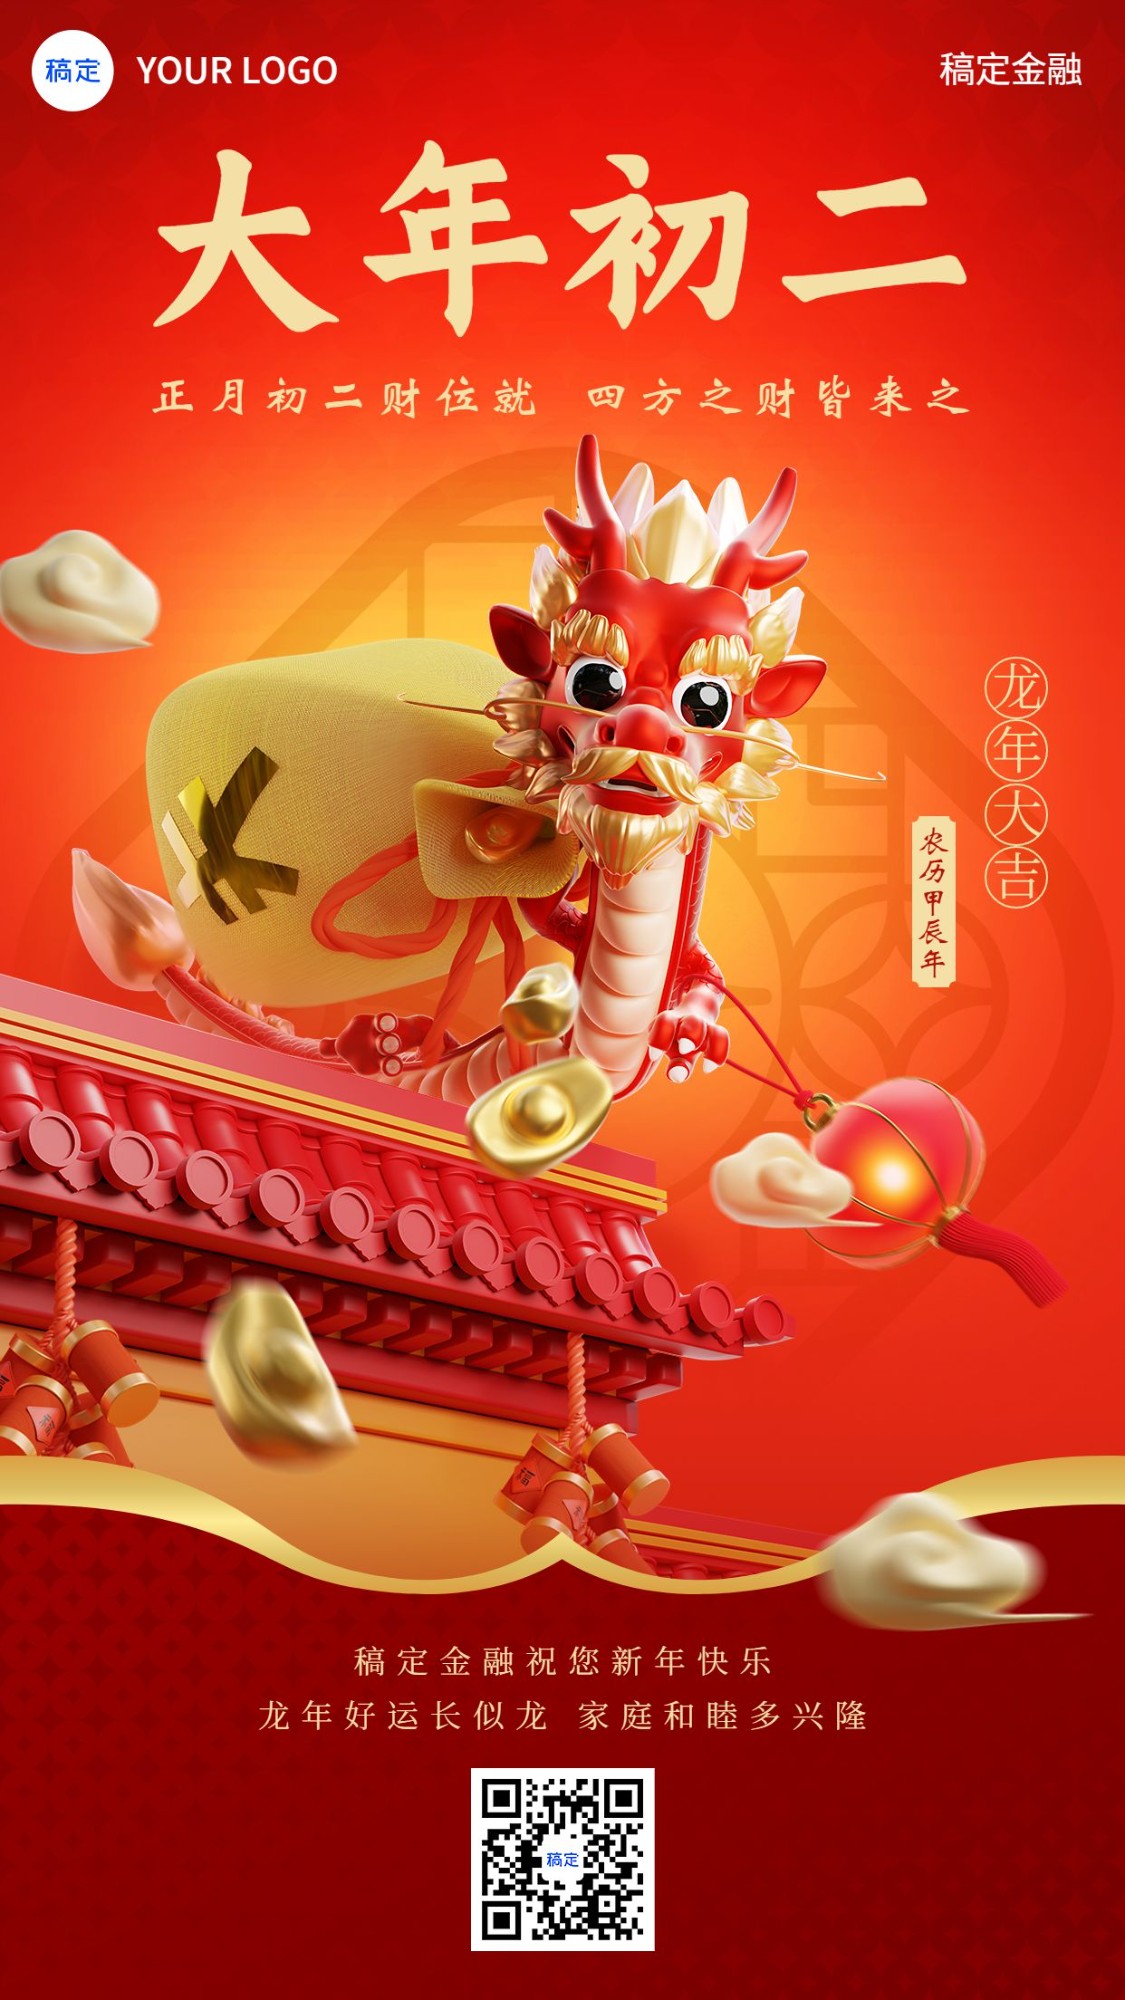 春节正月初二龙年金融保险节日祝福创意3D喜庆手机海报套系预览效果